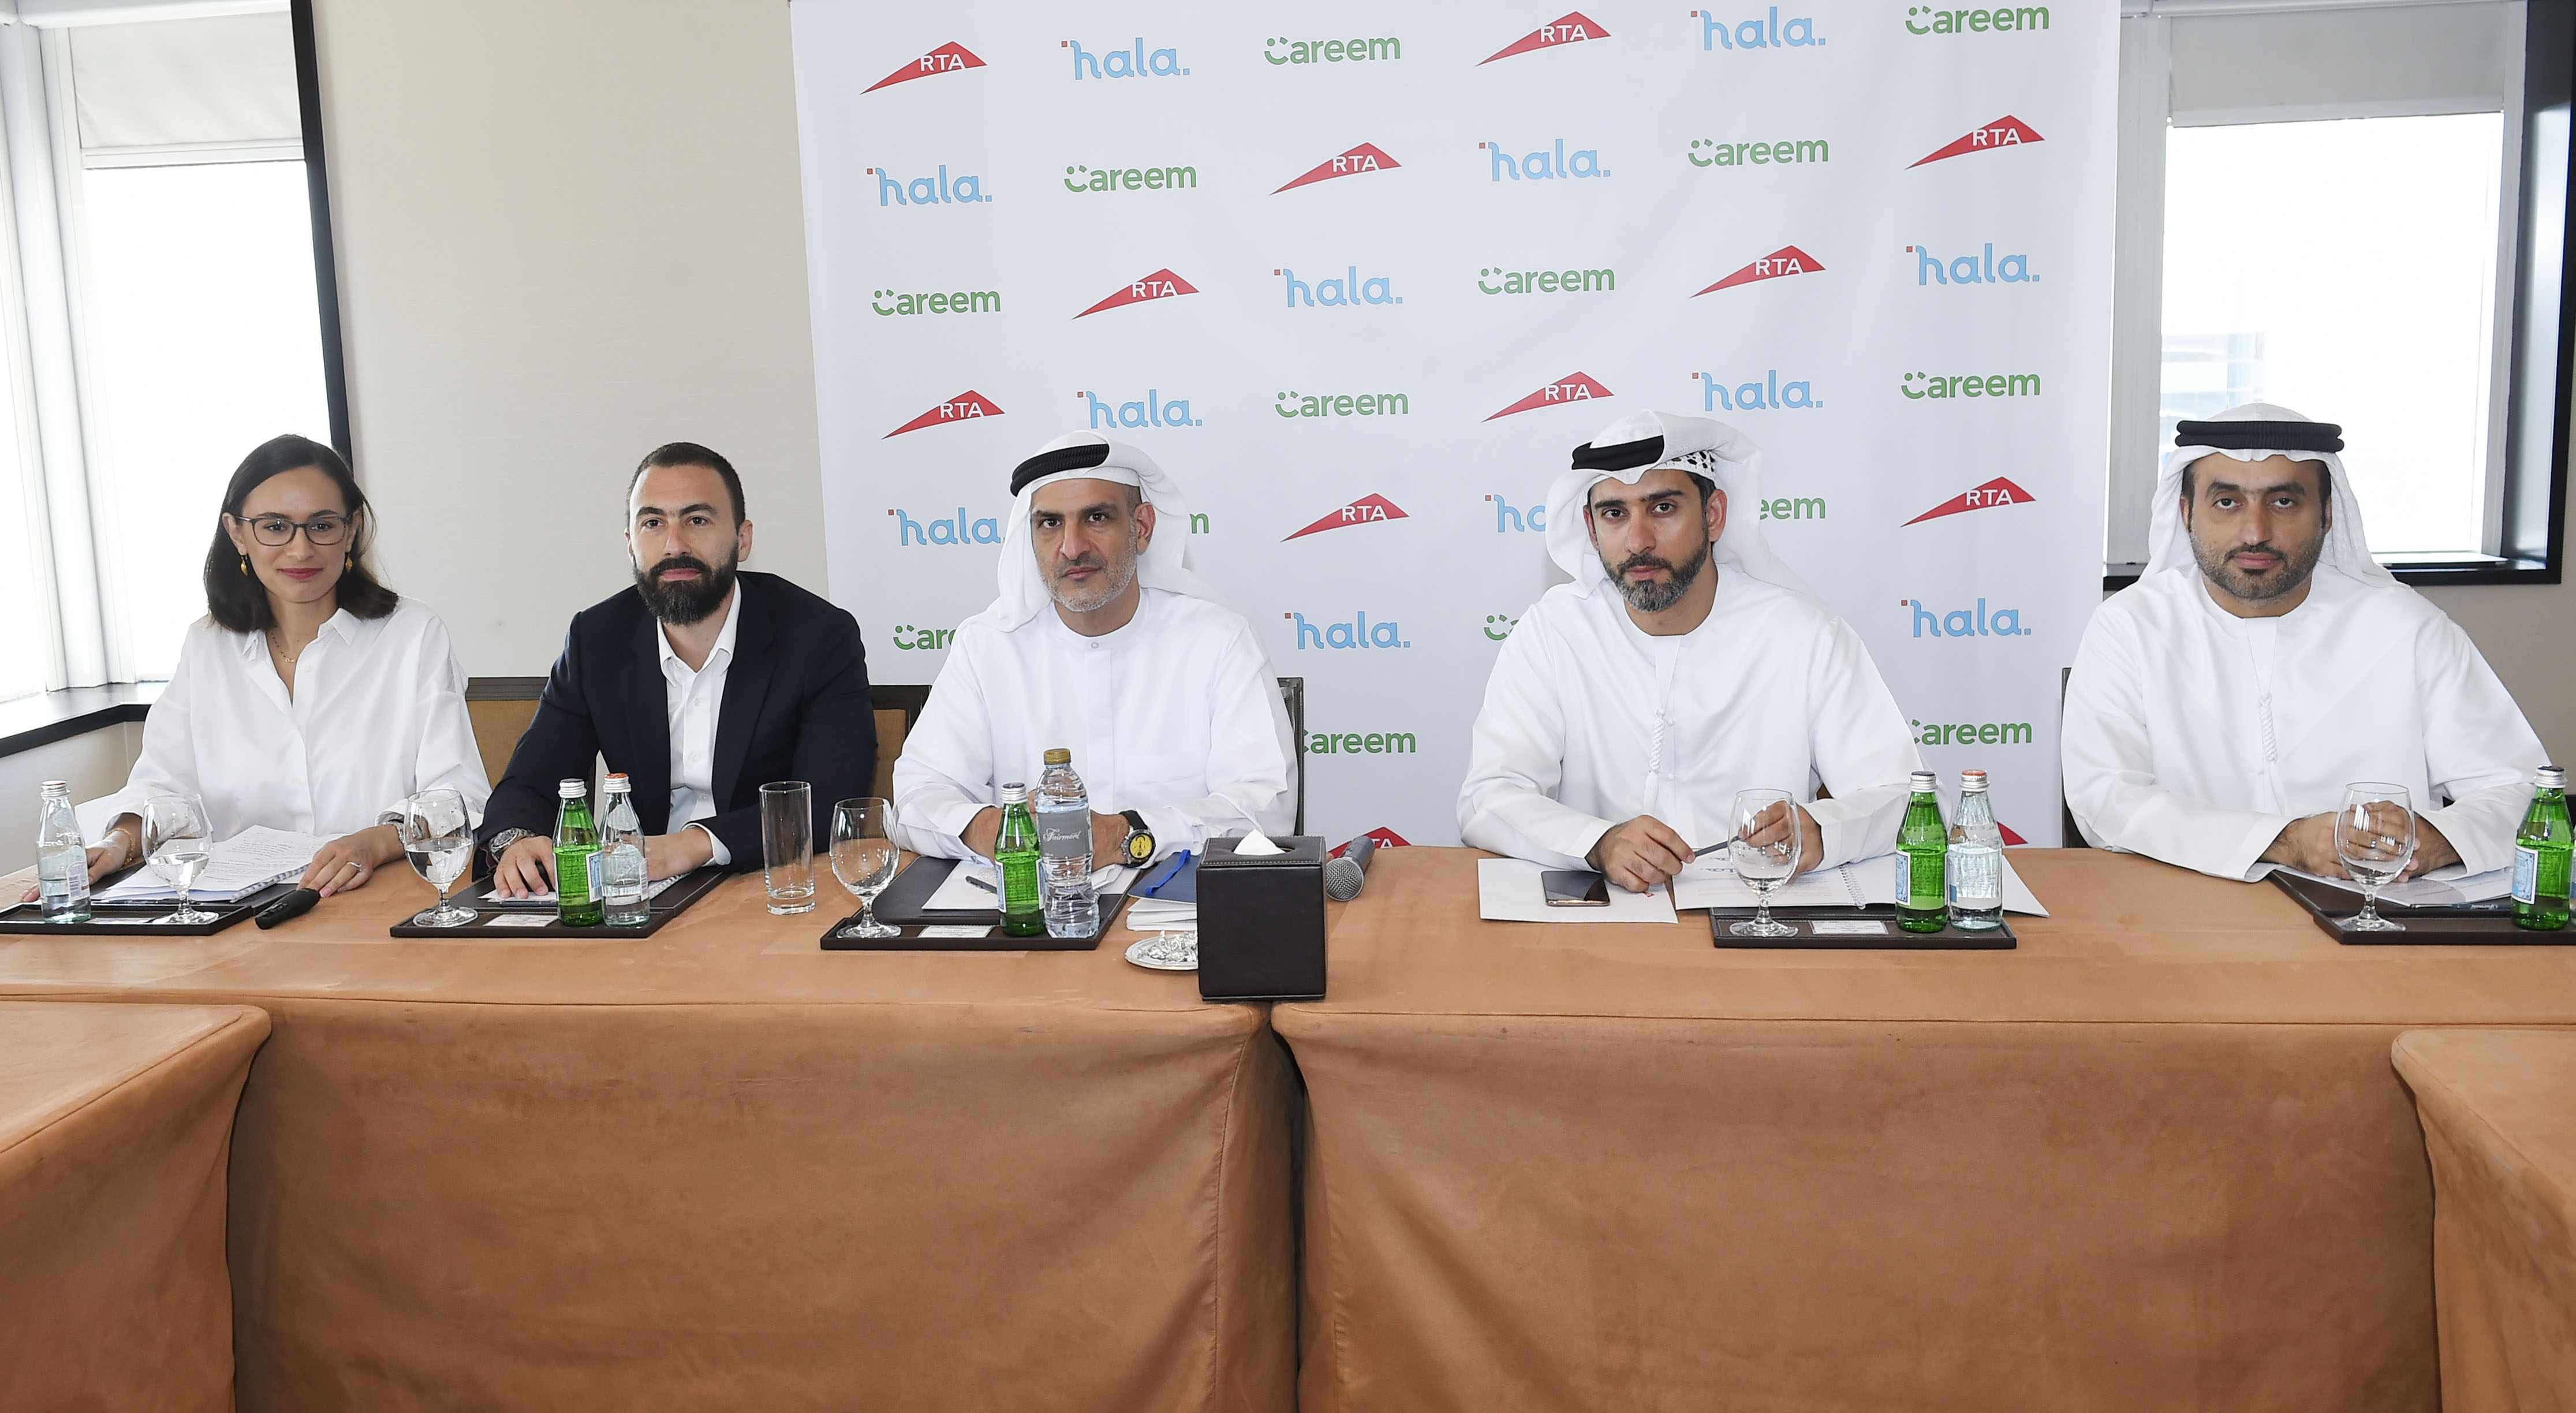  &طرق دبي& وشركة كريم تطلقان رسمياً خدمة &هلا& للحجز الإلكتروني في الإمارة